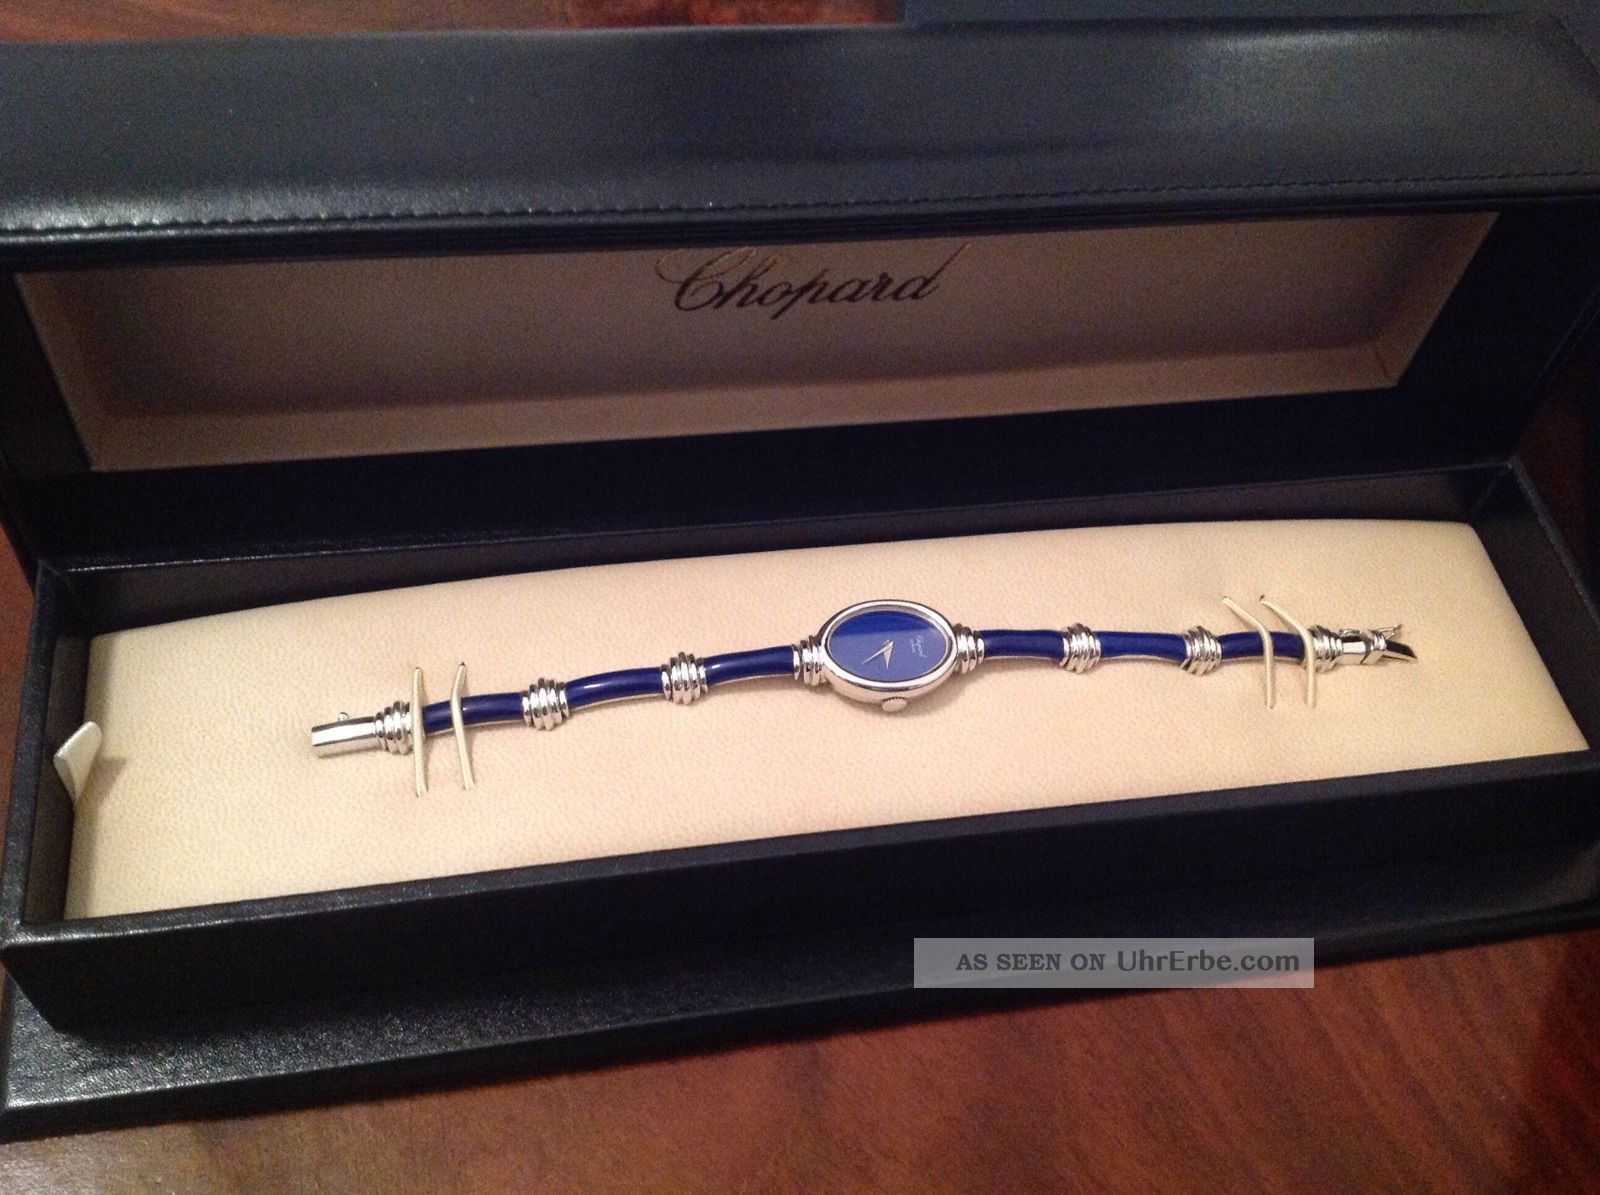 Chopard Damenuhr In 18kt Weissgold Mit Lapislazuli Im Bambus - Stil Armbanduhren Bild